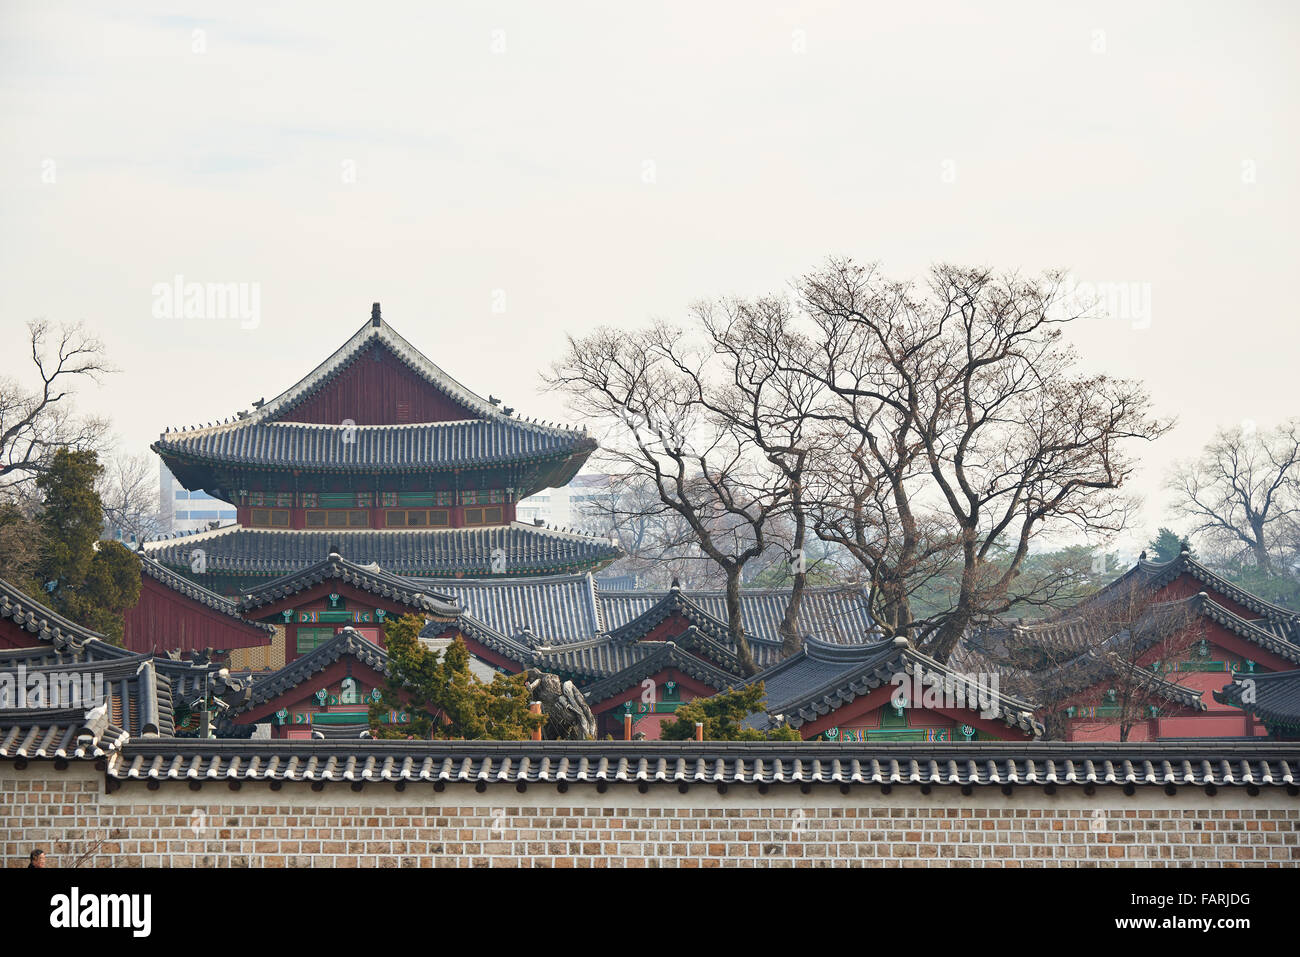 Tetti di tegole del coreano tradizionale palazzo a Seul Foto Stock